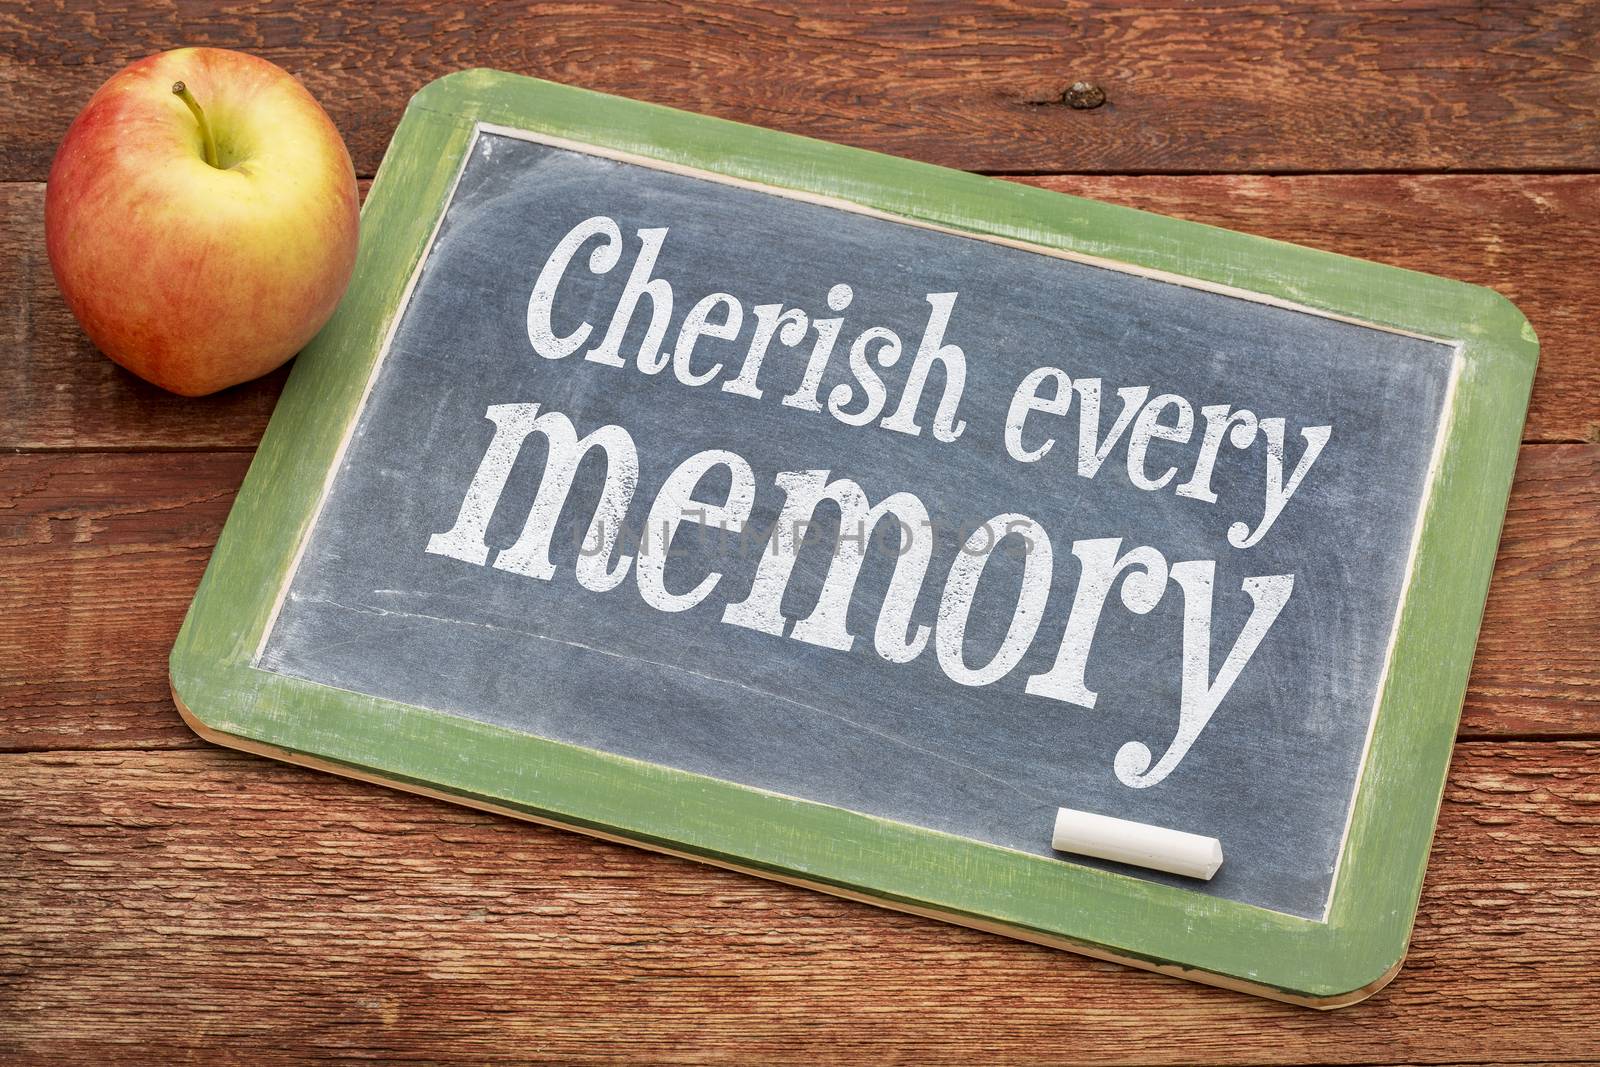 Cherish every memory on blackboard by PixelsAway